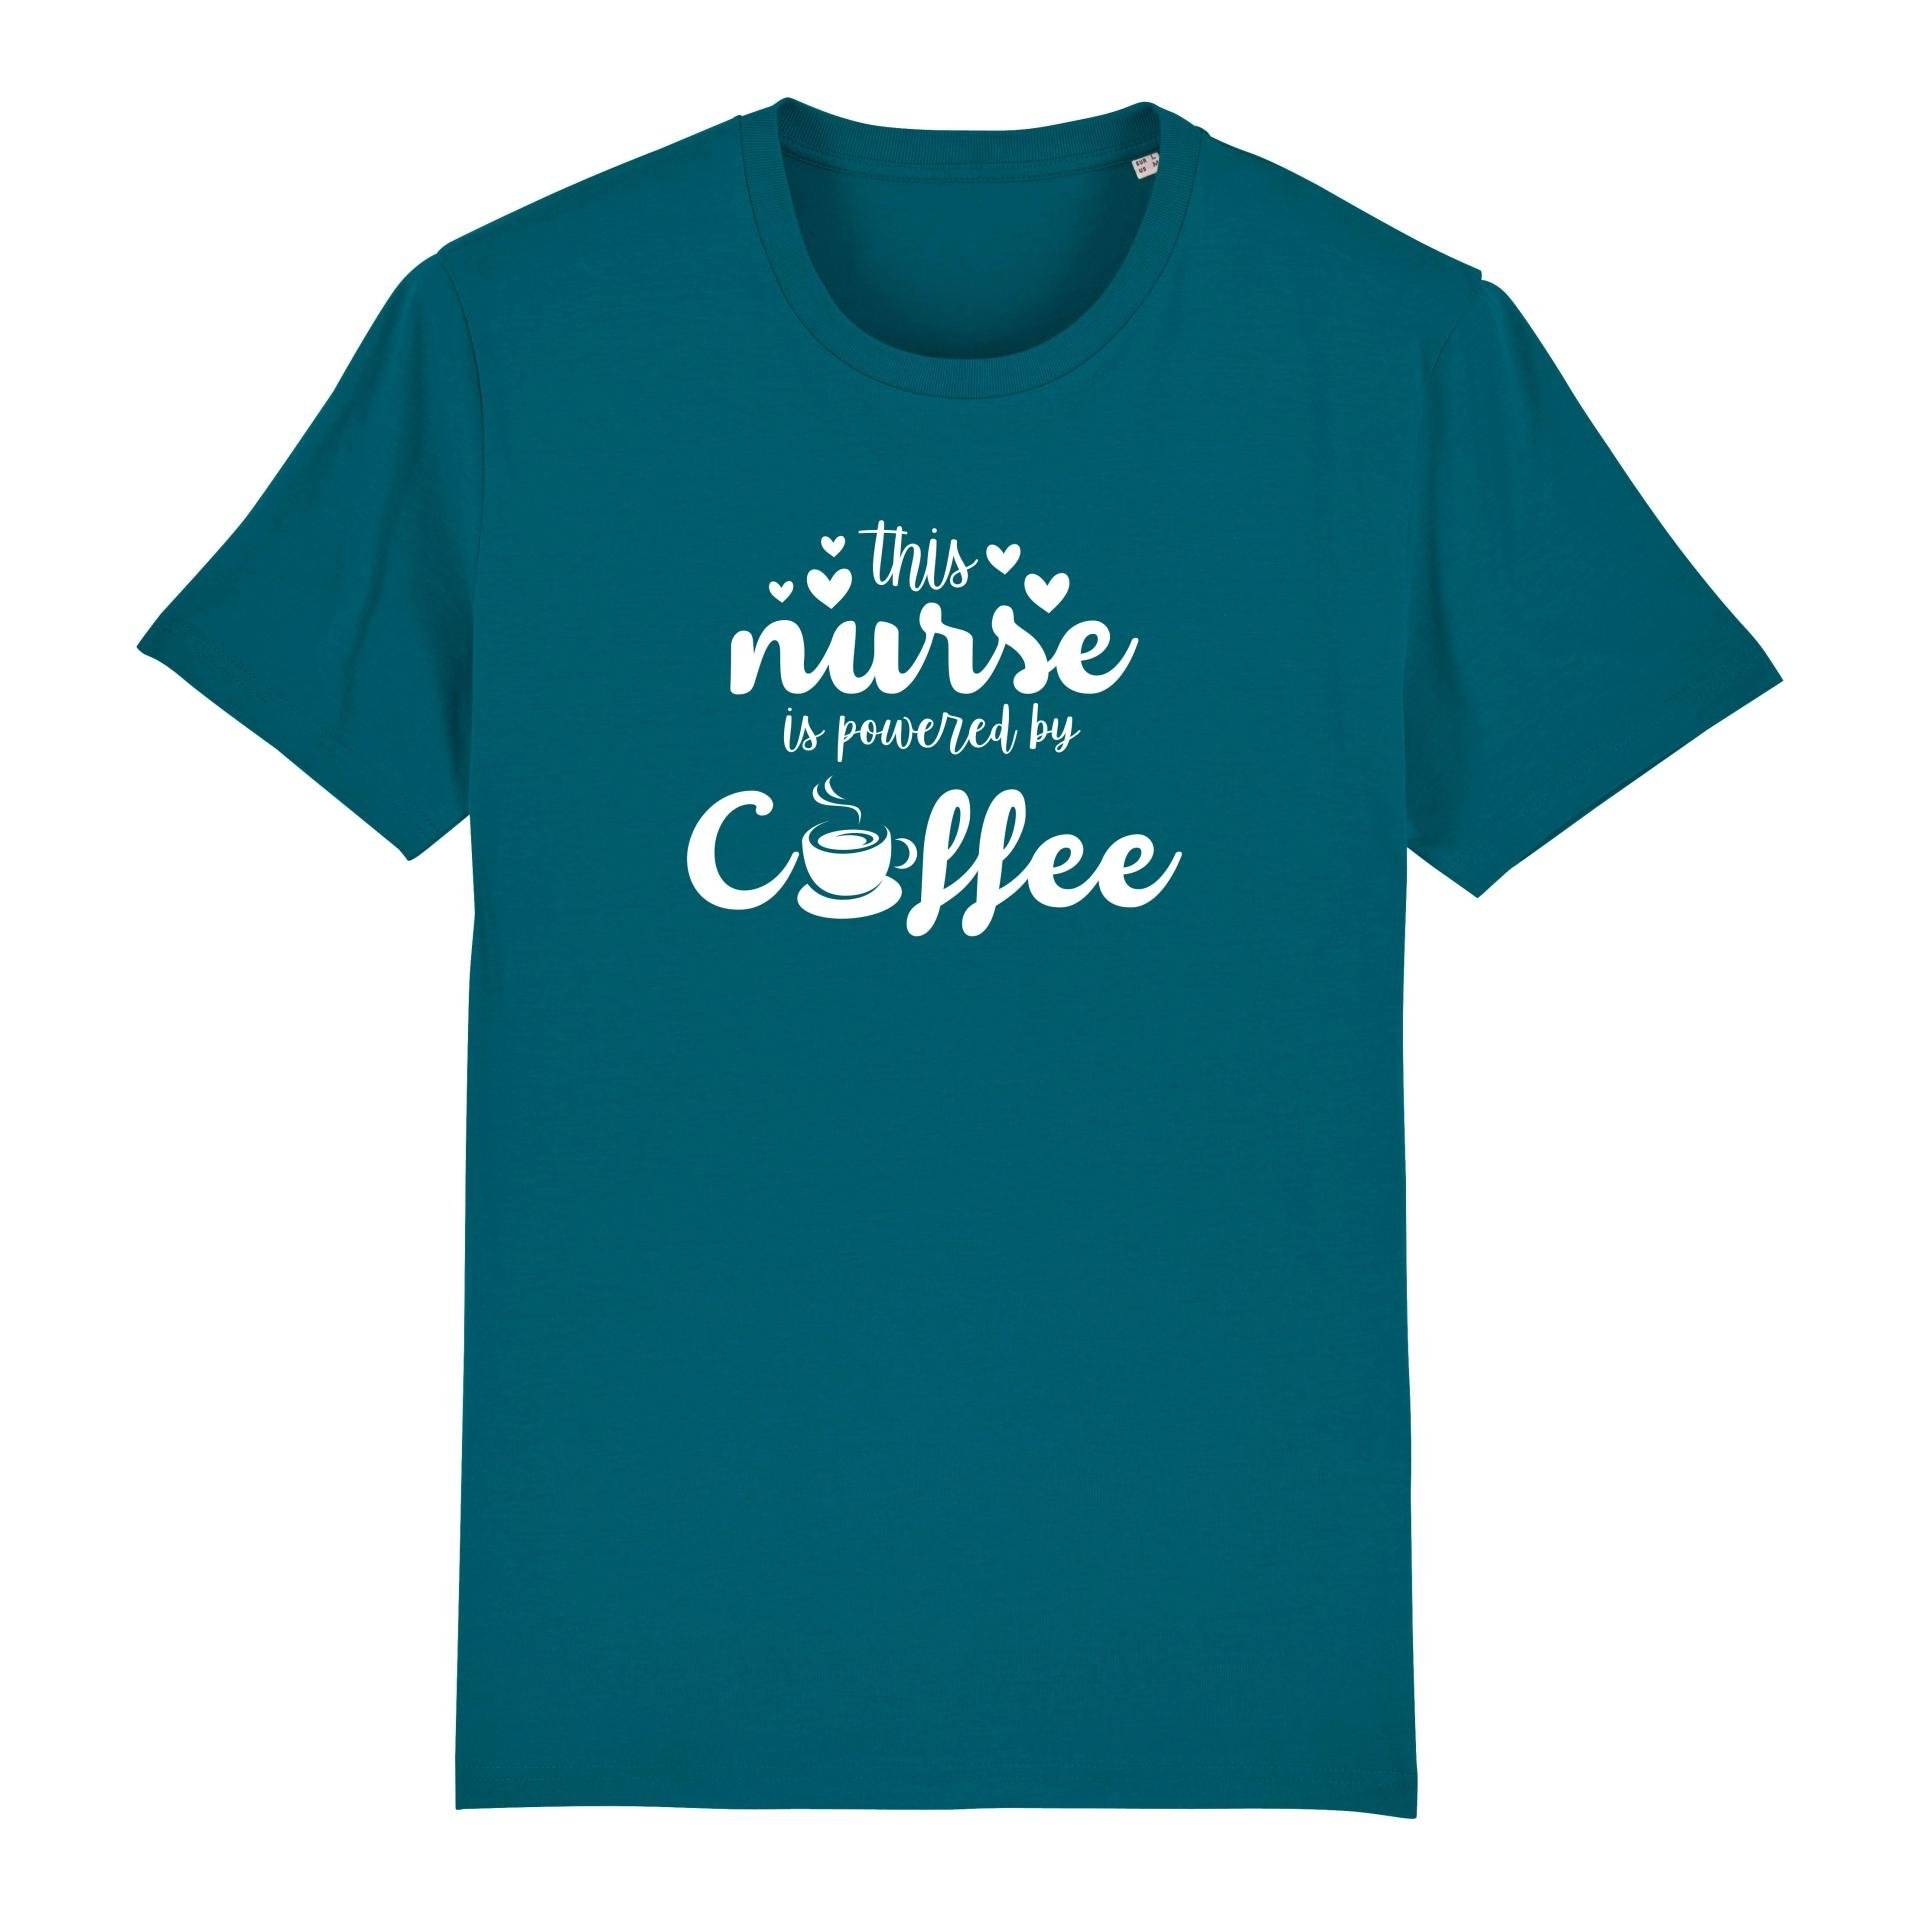 Schwesternuhr This nurse is powered by coffee Bio T-Shirt Unisex Farbe: Ocean Depth, Grösse: 3XL von Schwesternuhr